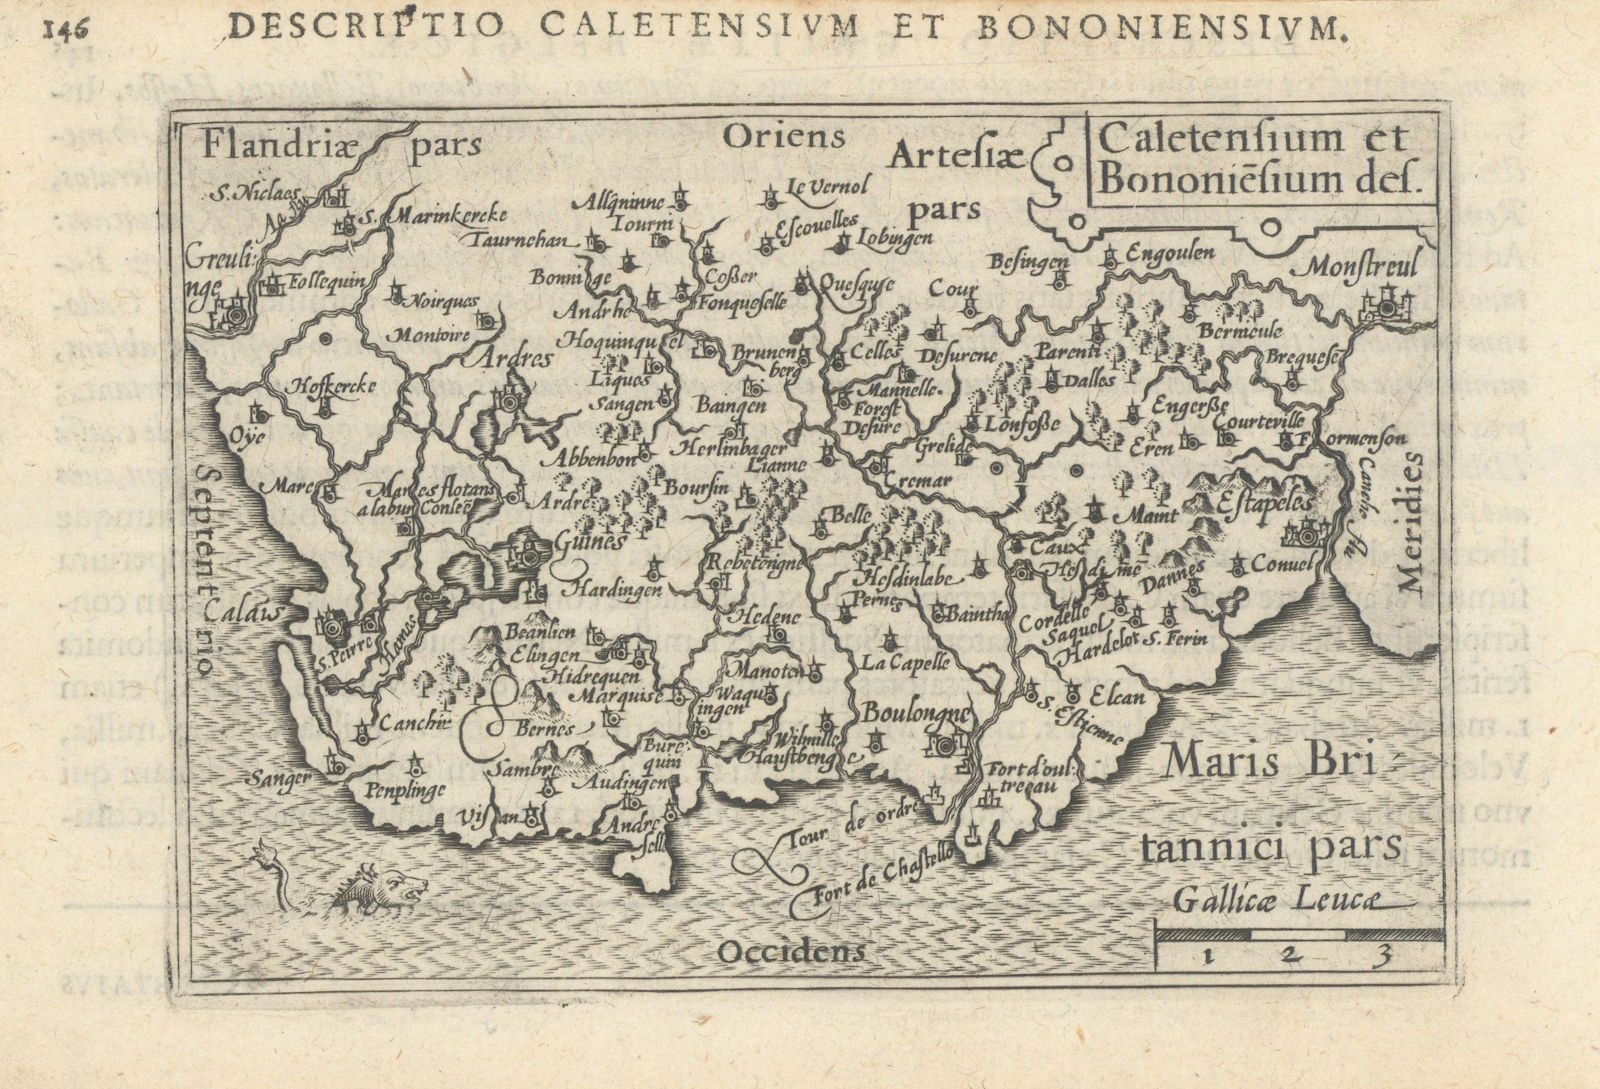 Caletensium et Bononiensium by Bertius / Langenes. Pas-de-Calais coast 1603 map